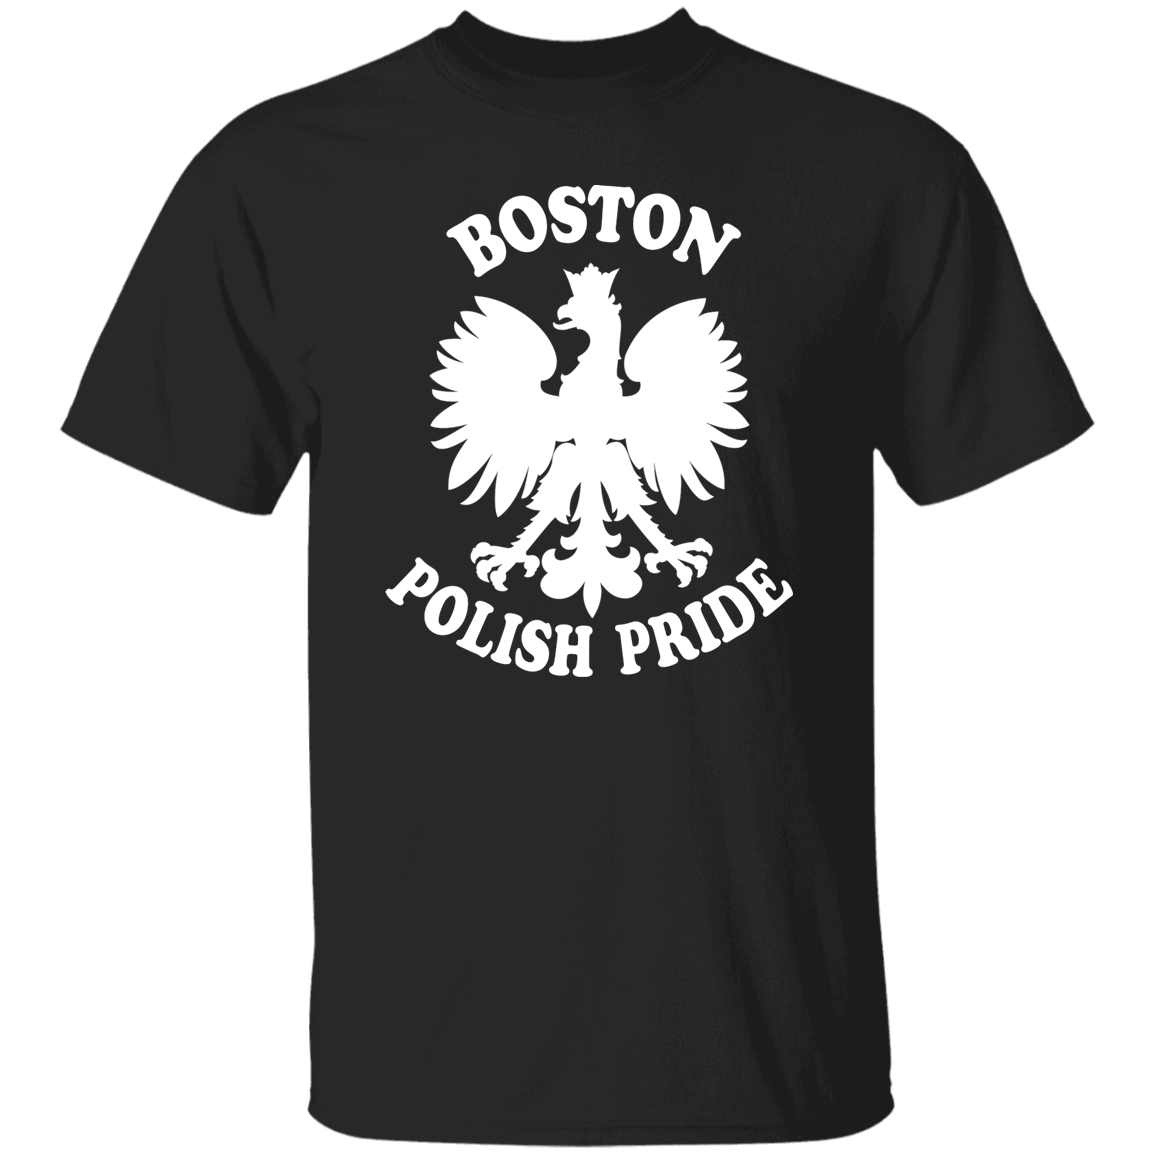 Boston Polish Pride Apparel CustomCat G500 5.3 oz. T-Shirt Black S